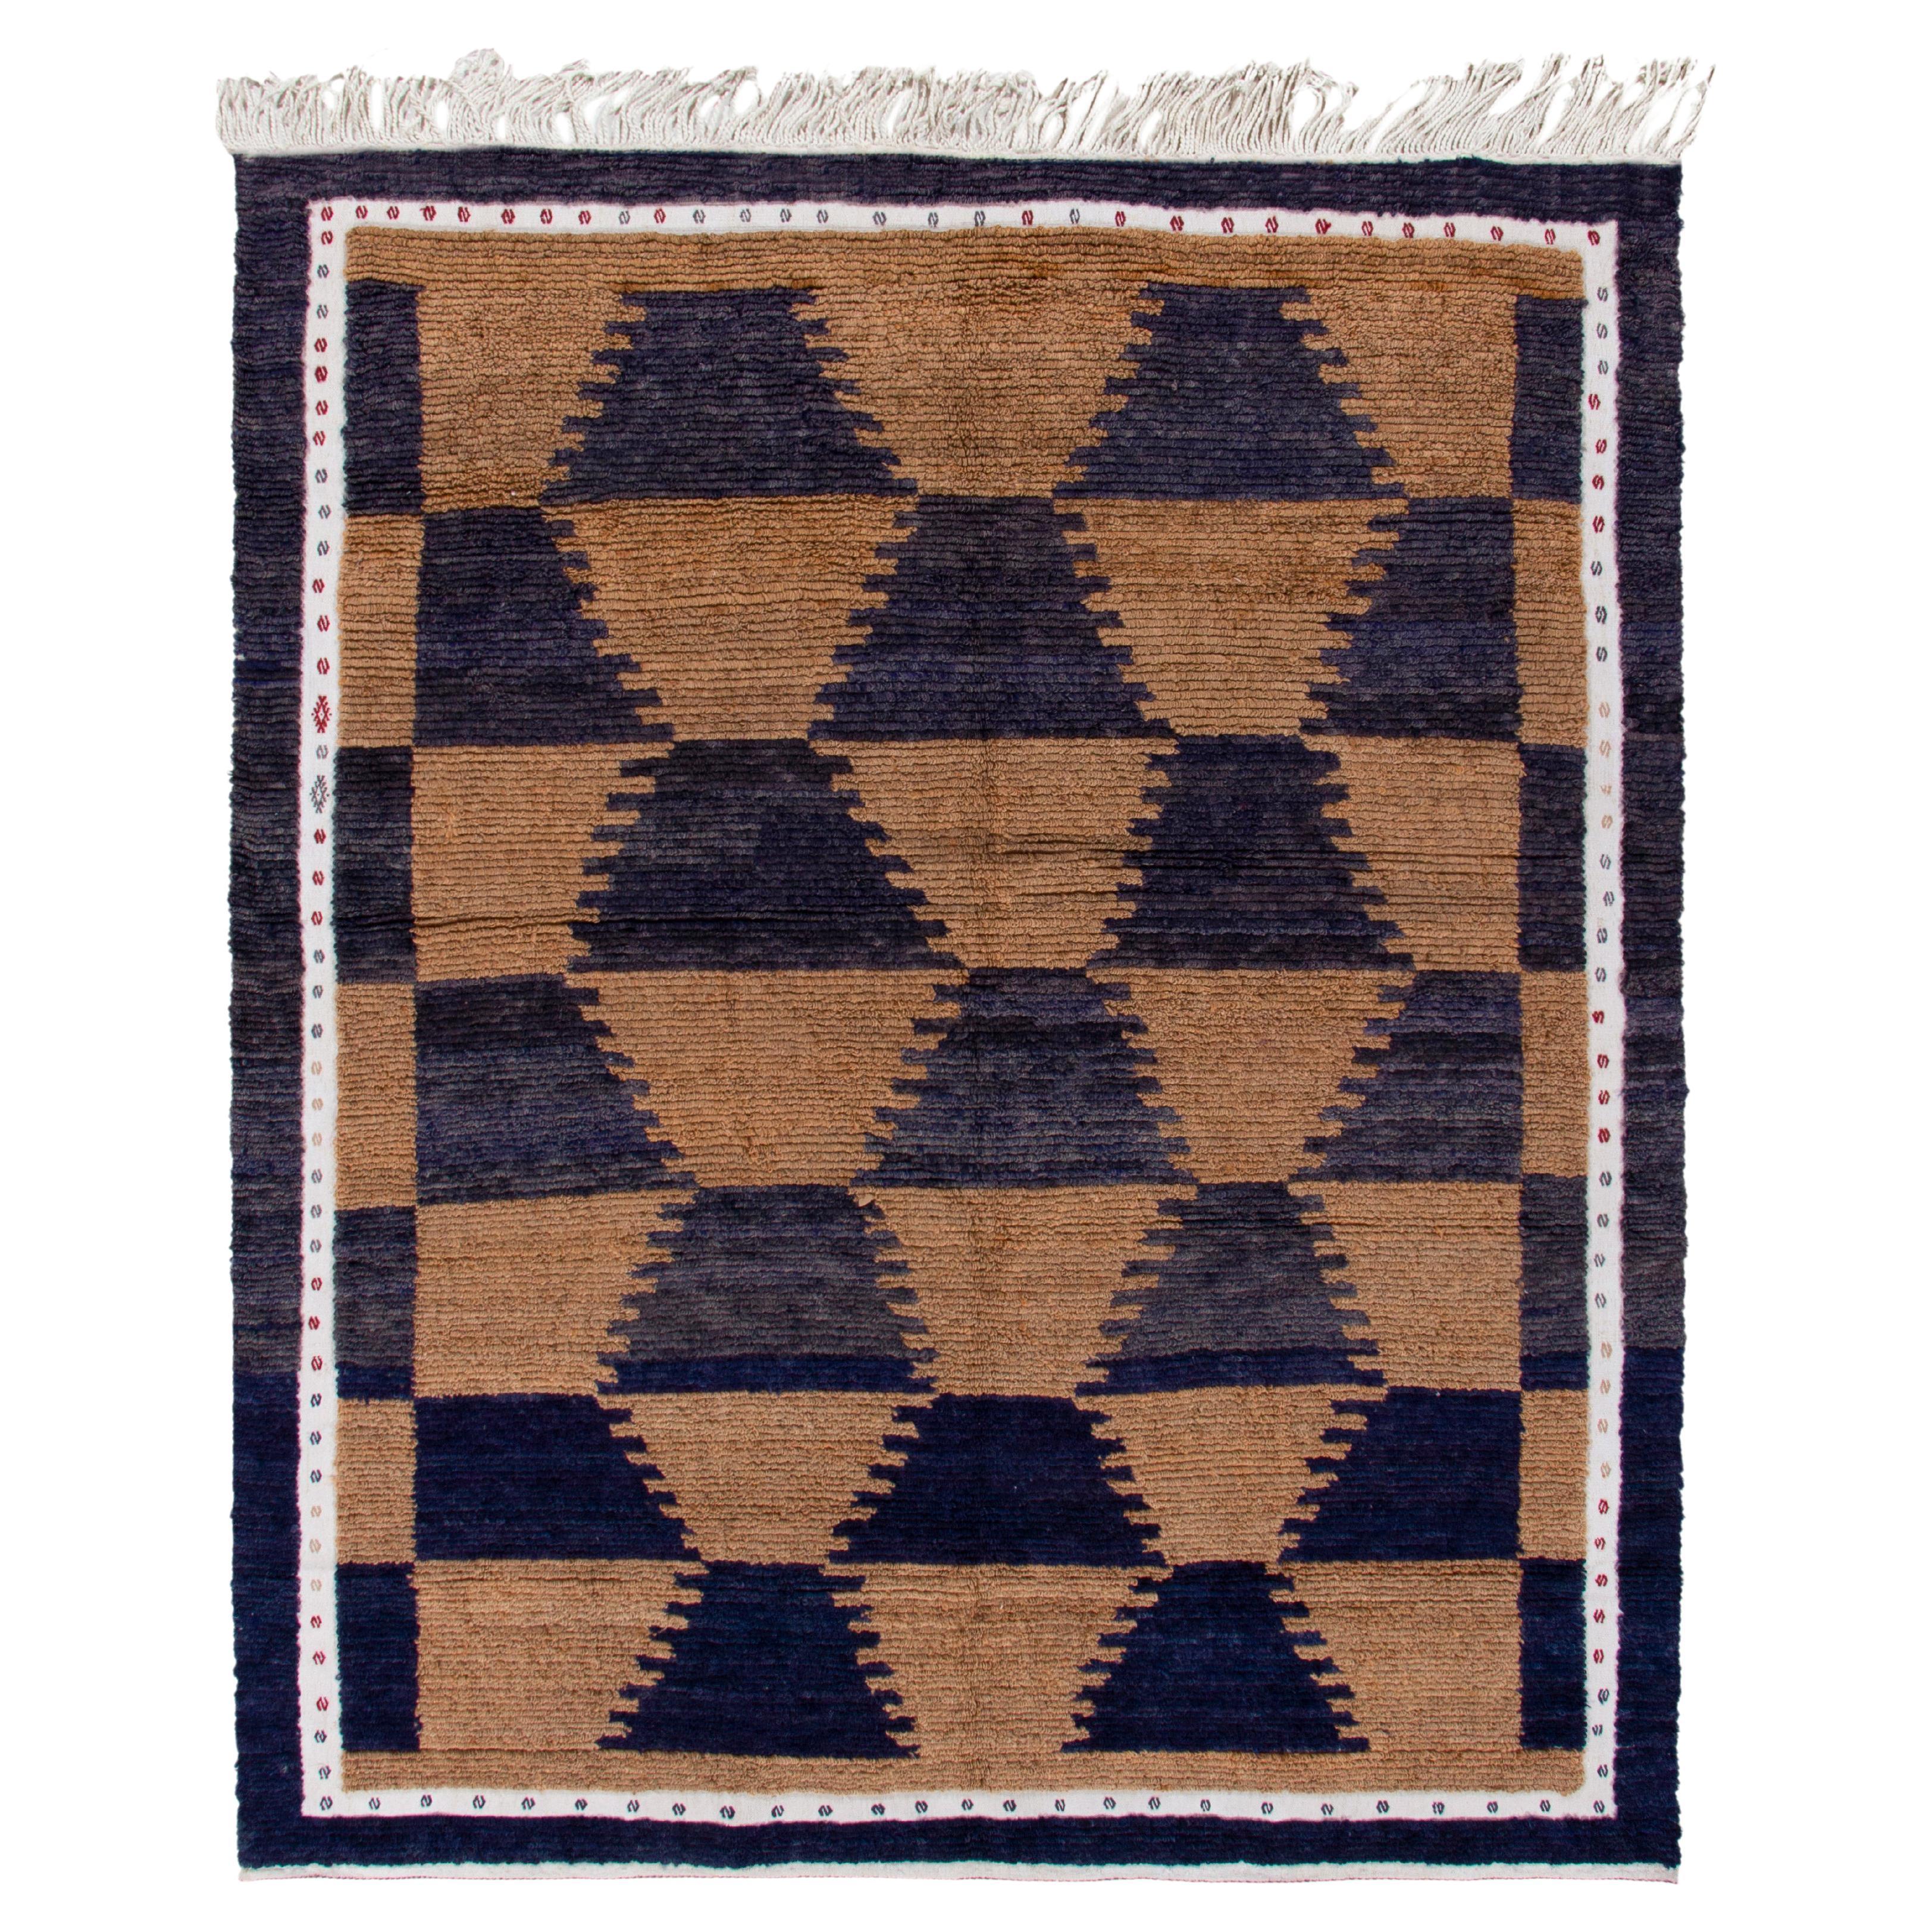 Vintage Tulu Rug in Brown Midnight Blue & White Geometric Pattern by Rug & Kilim